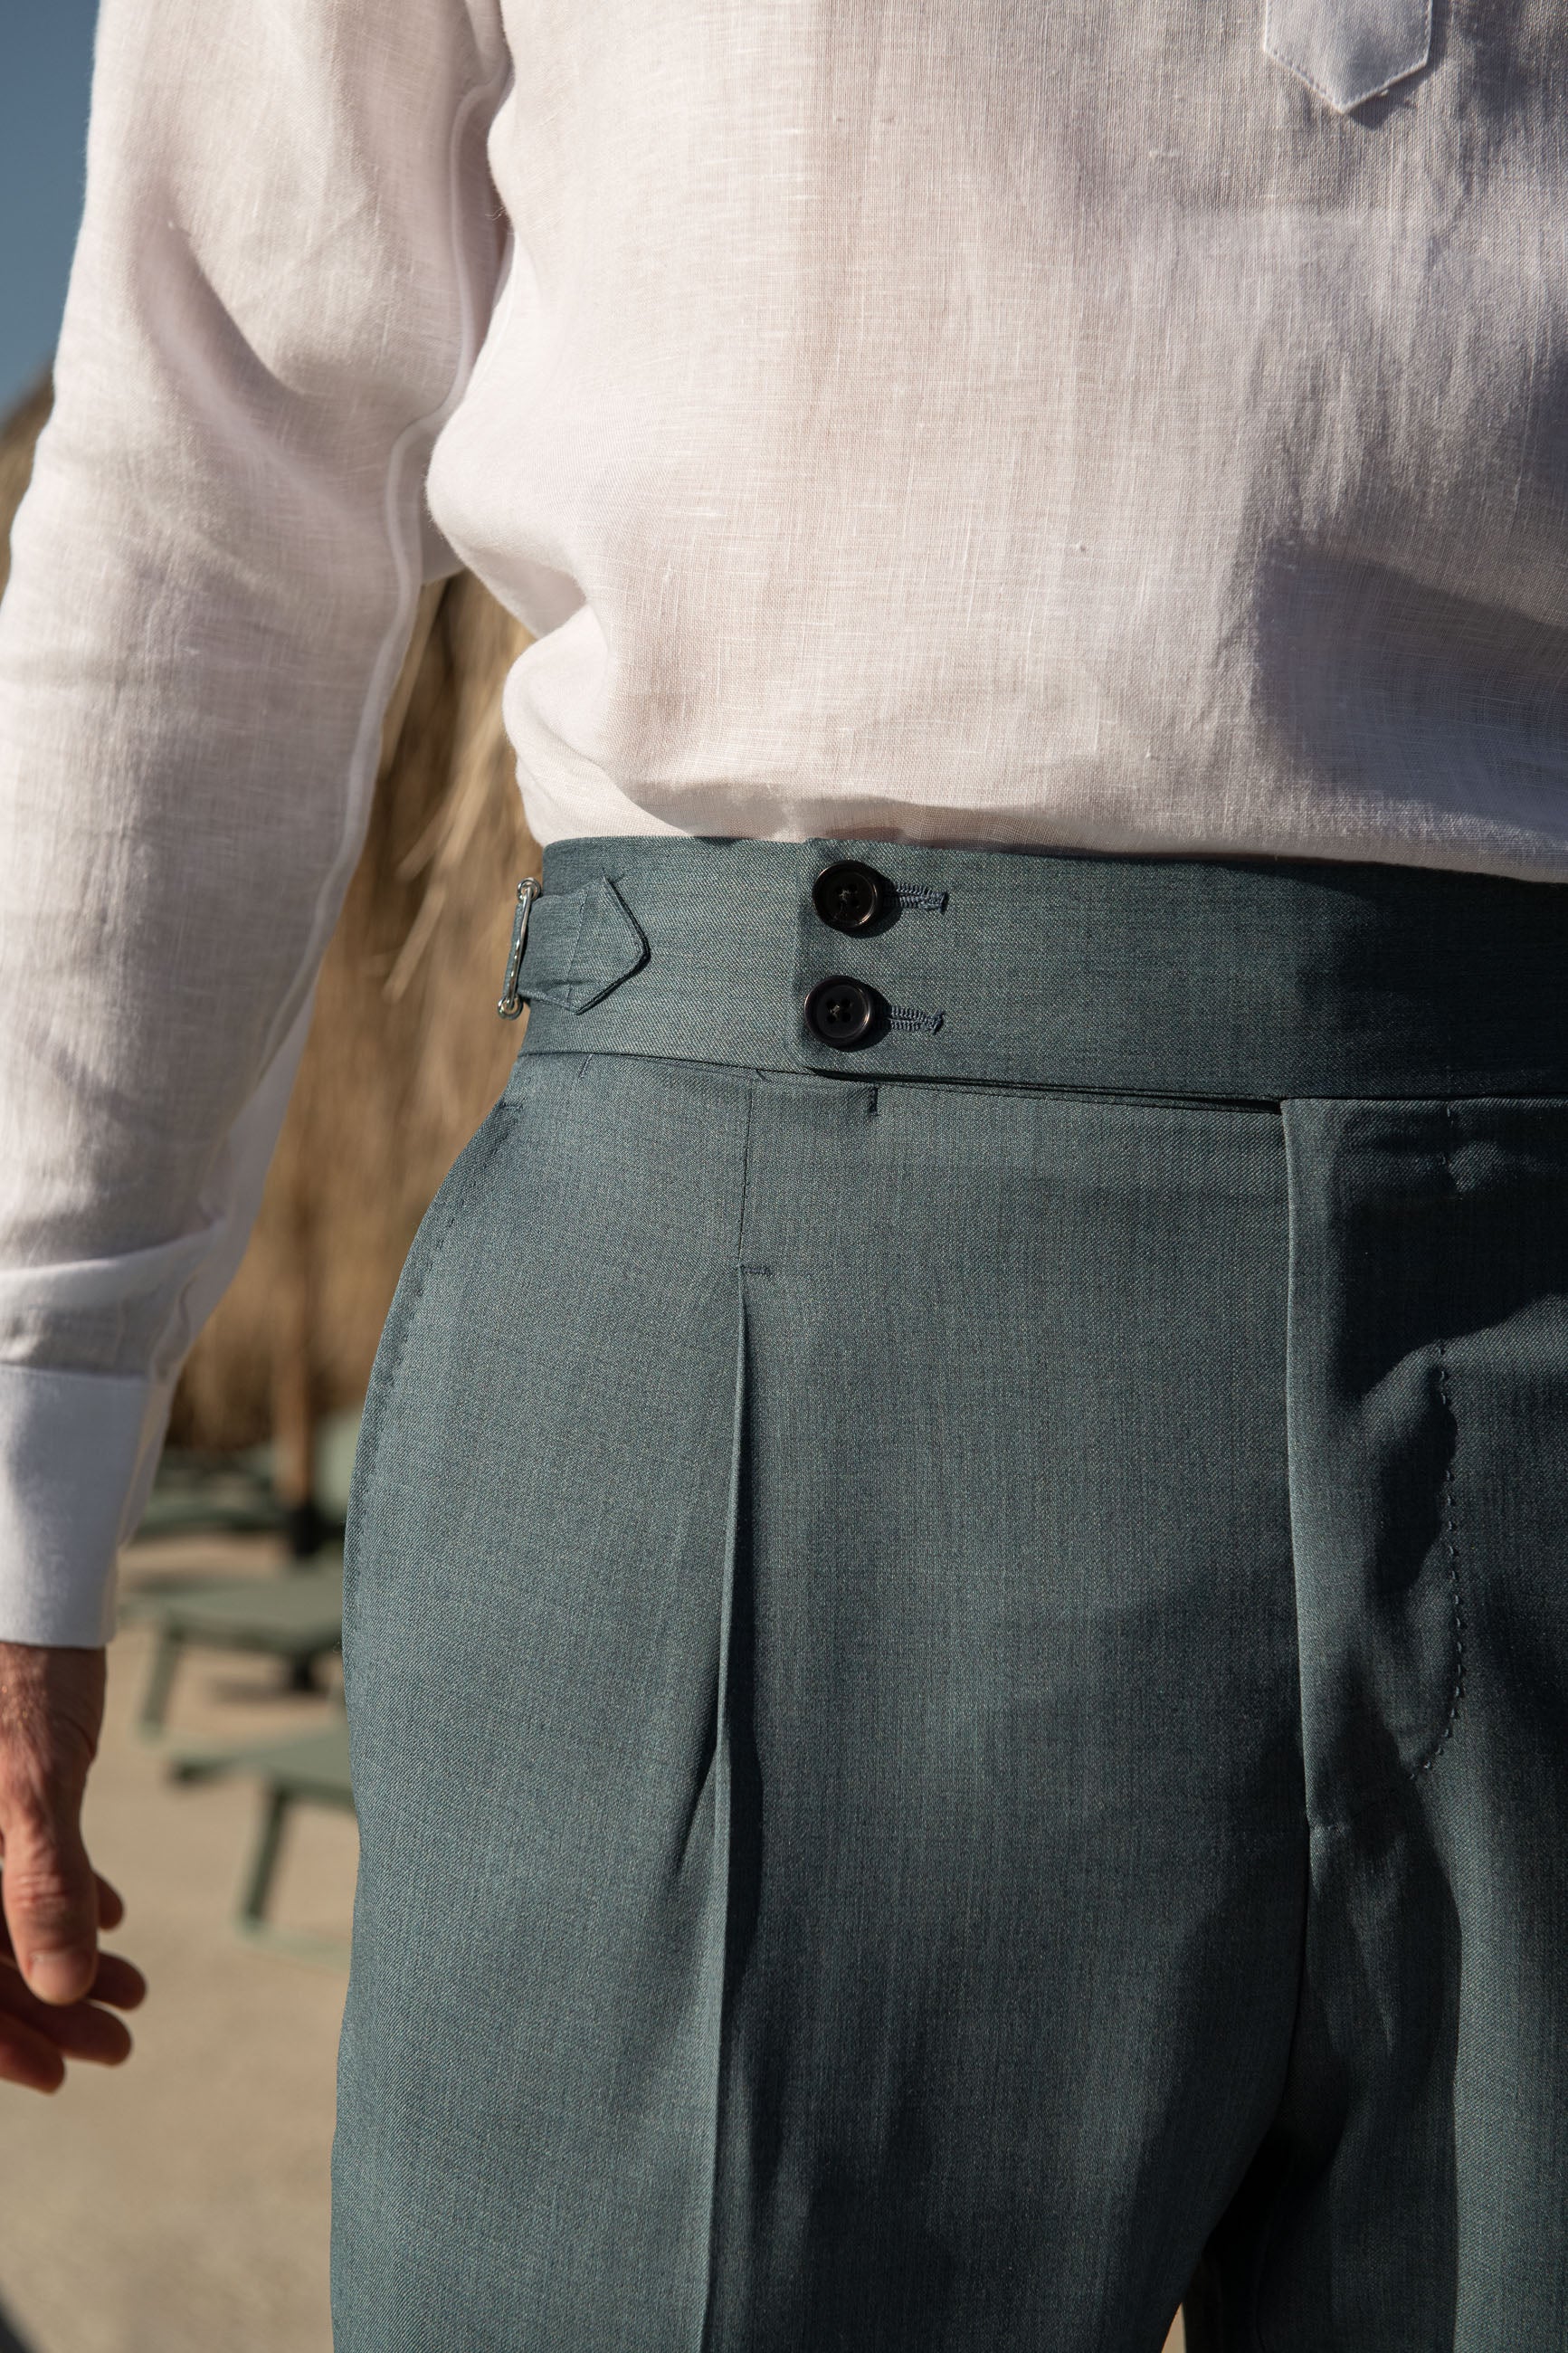 Pantalon en coton écru Soragna Capsule Collection  - -. Made in Italy